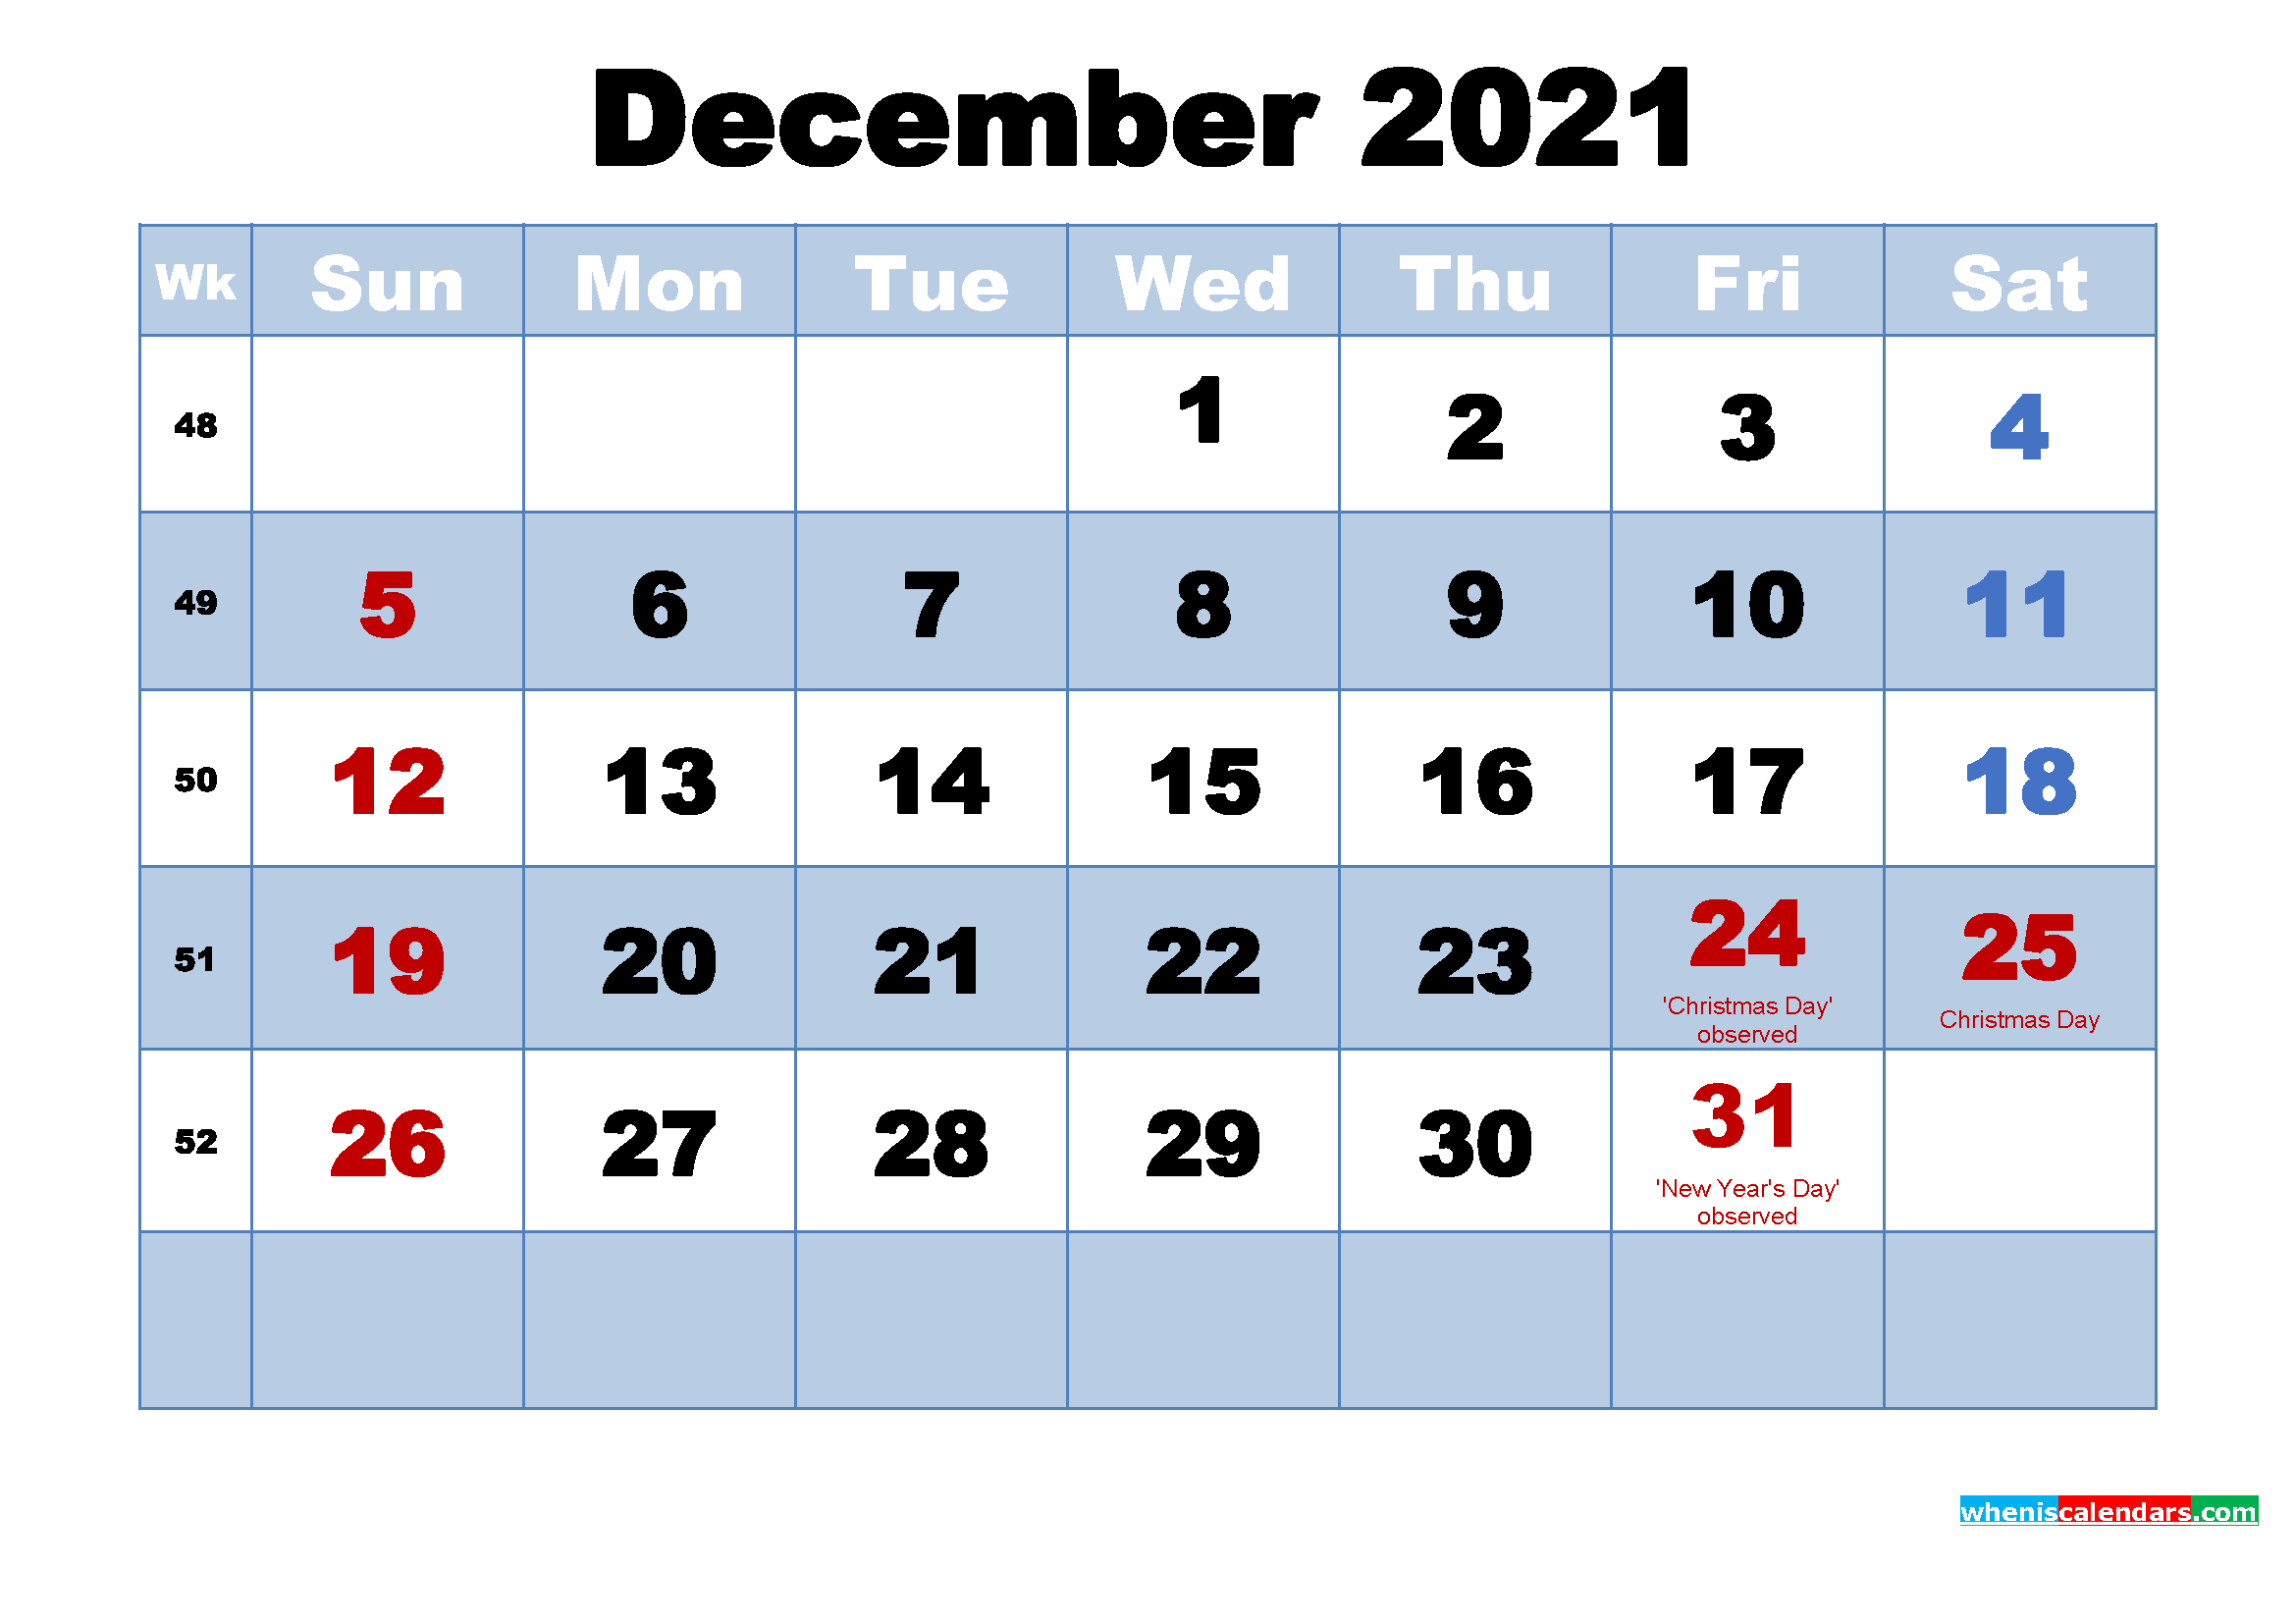 December 2021 Calendar Wallpaper High Resolution Free